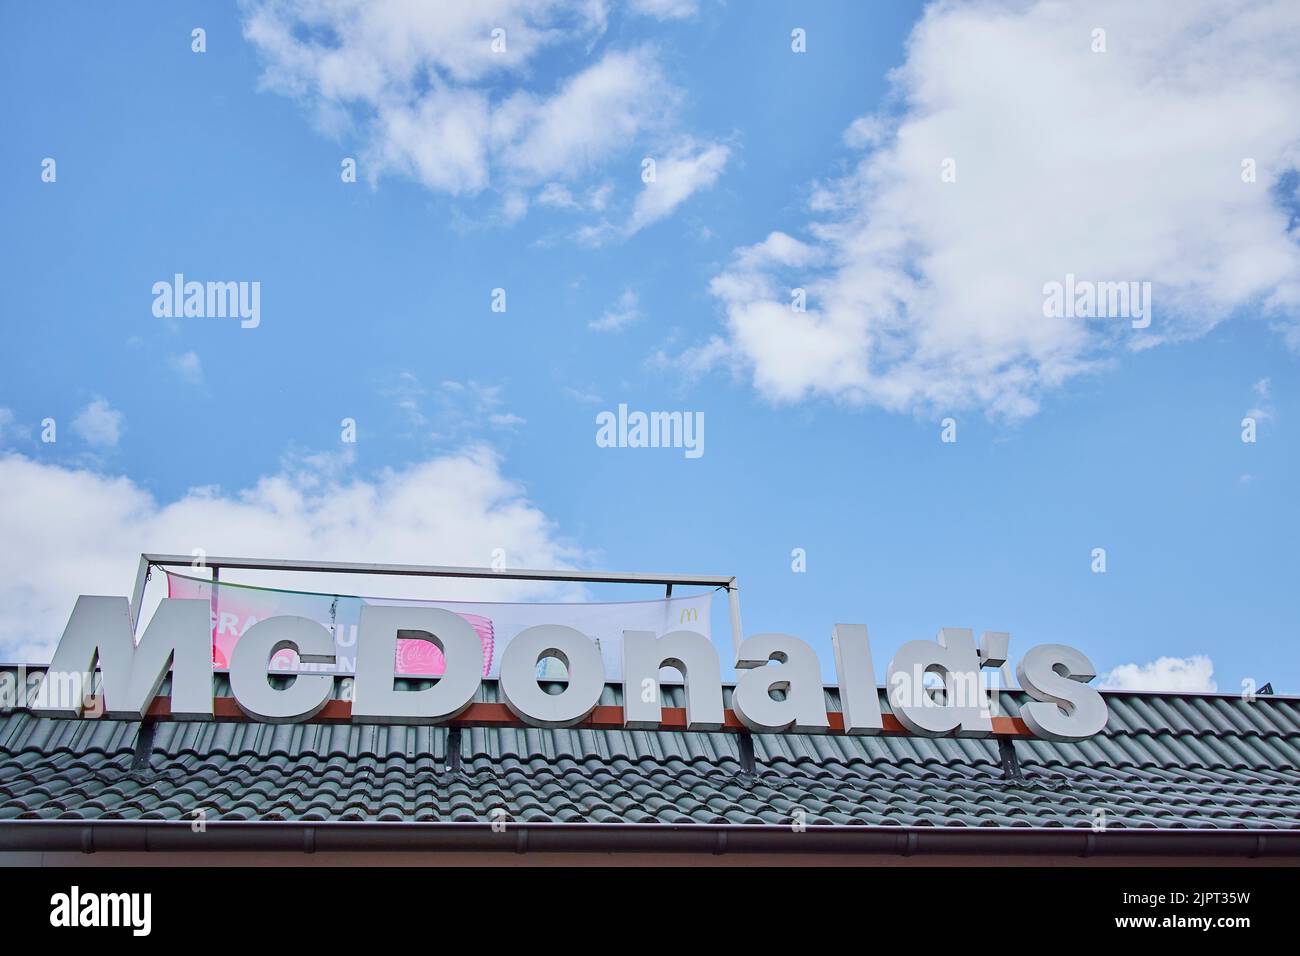 Un'inquadratura a basso angolo del logo di un fast food sotto un cielo nuvoloso blu in Germania Foto Stock